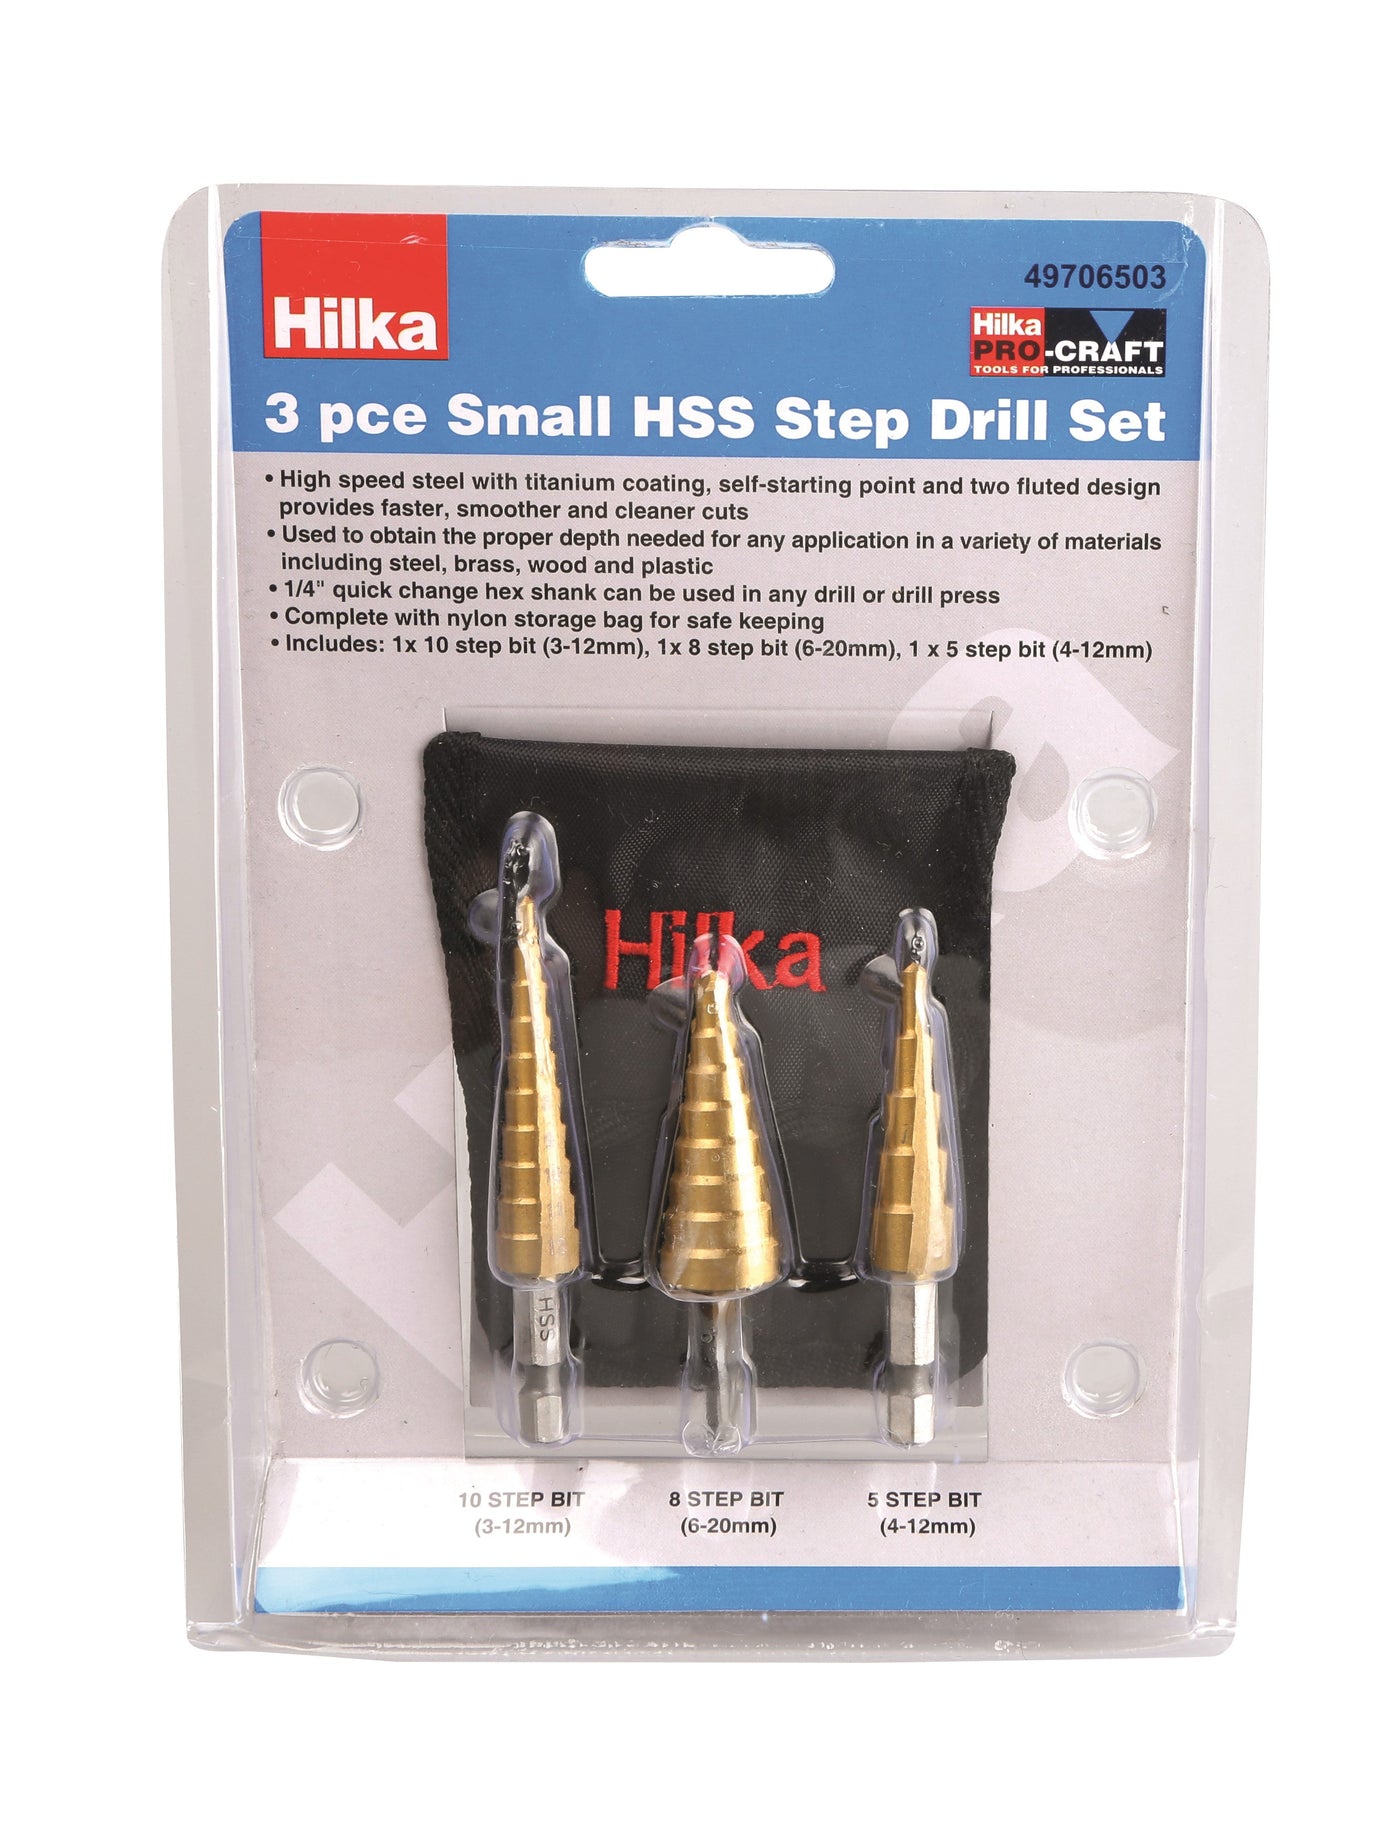 Hilka 3 Piece Small HSS Step Drill